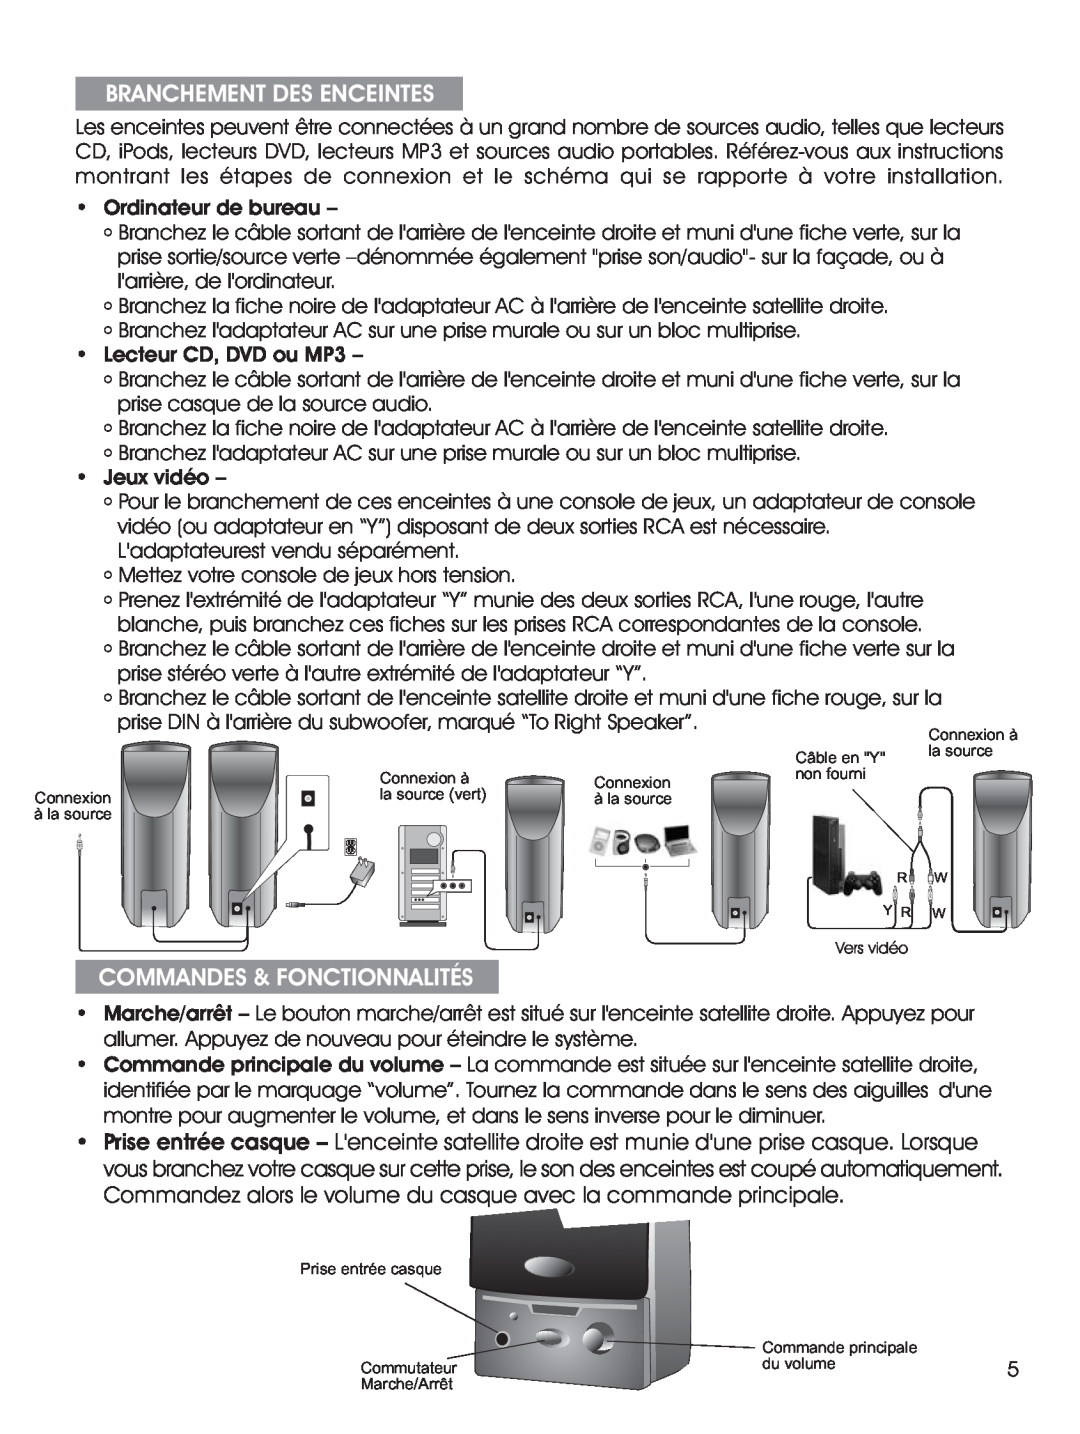 Cyber Acoustics CA-2014 manual Branchement Des Enceintes, Commandes & Fonctionnalités, Ordinateur de bureau, Jeux vidéo 